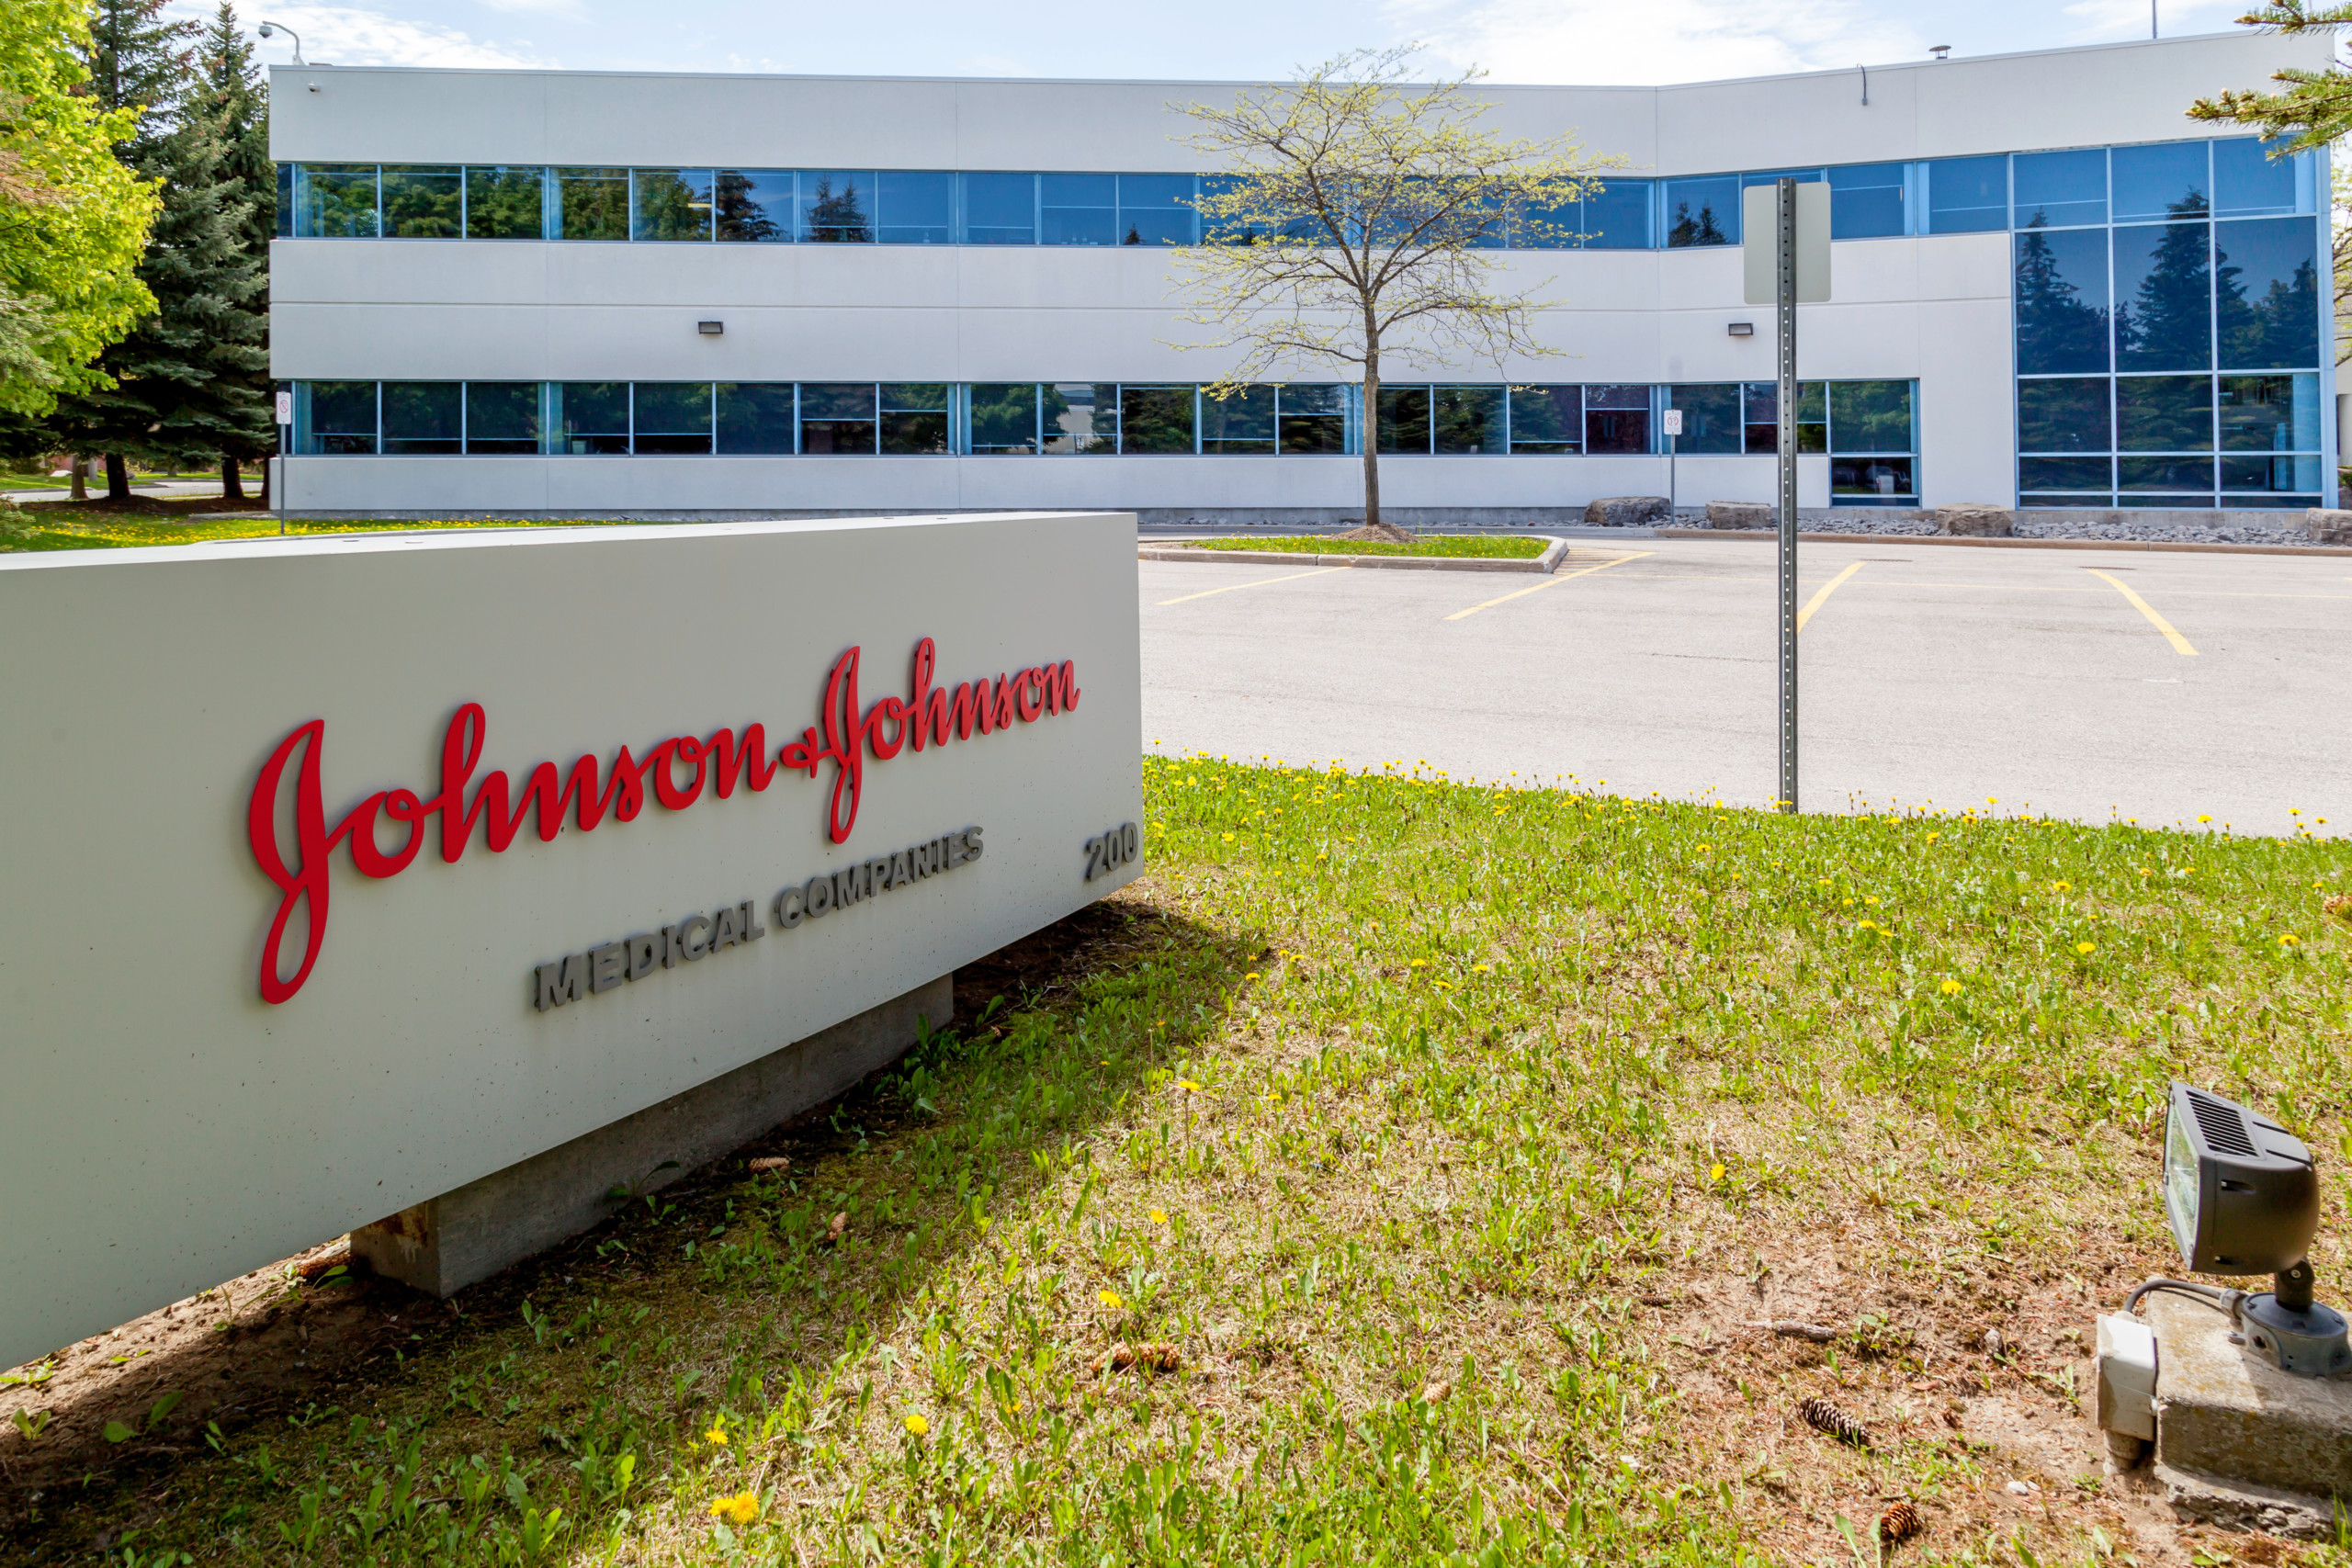 Nach 40 Mrd. USD Abspaltung: Plant Johnson & Johnson neue Übernahmen und Investitionen in Robotik?